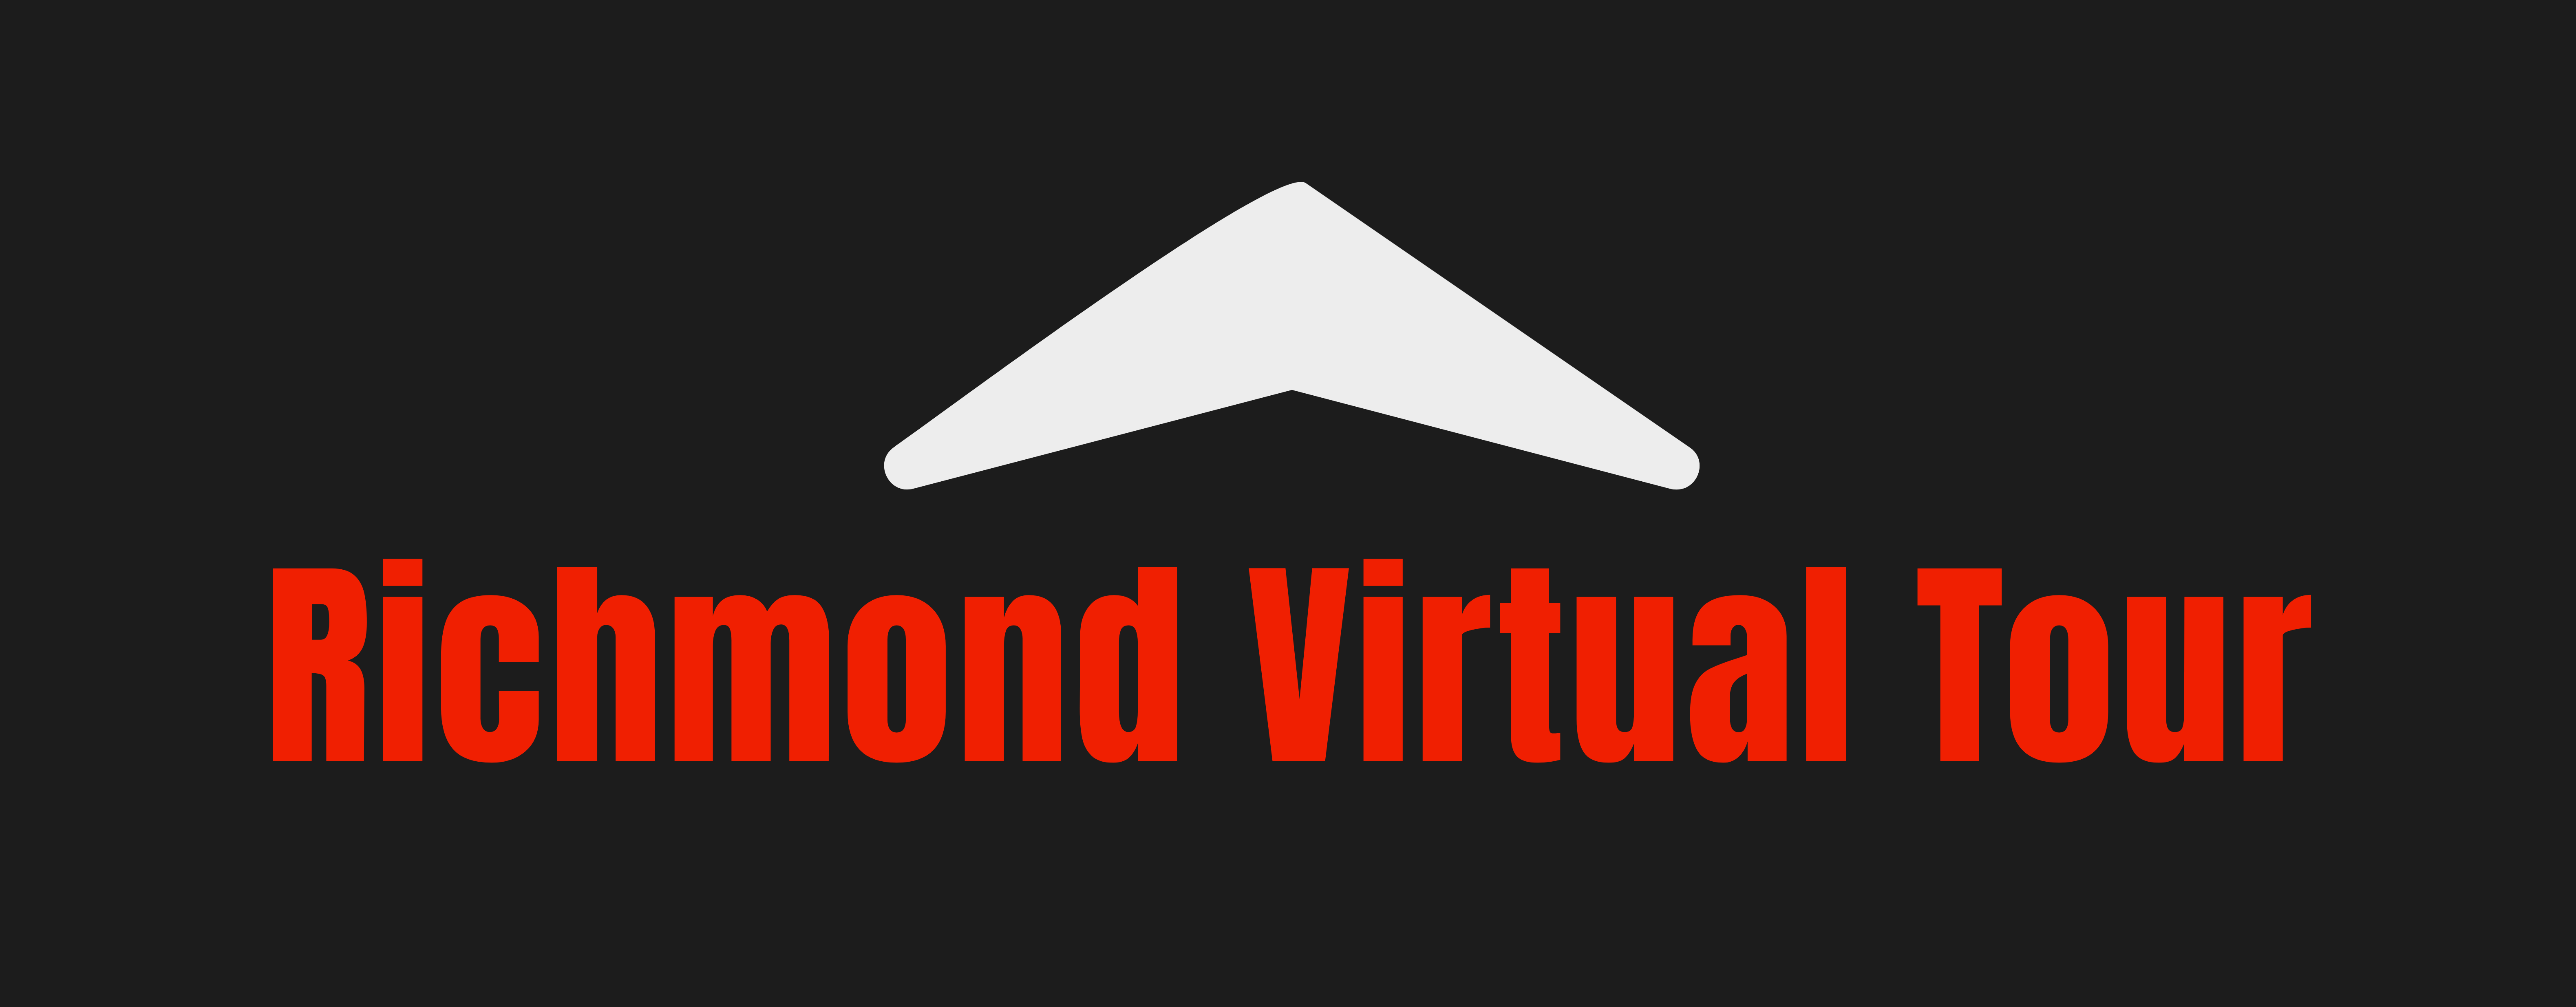 Richmond Virtual Tour